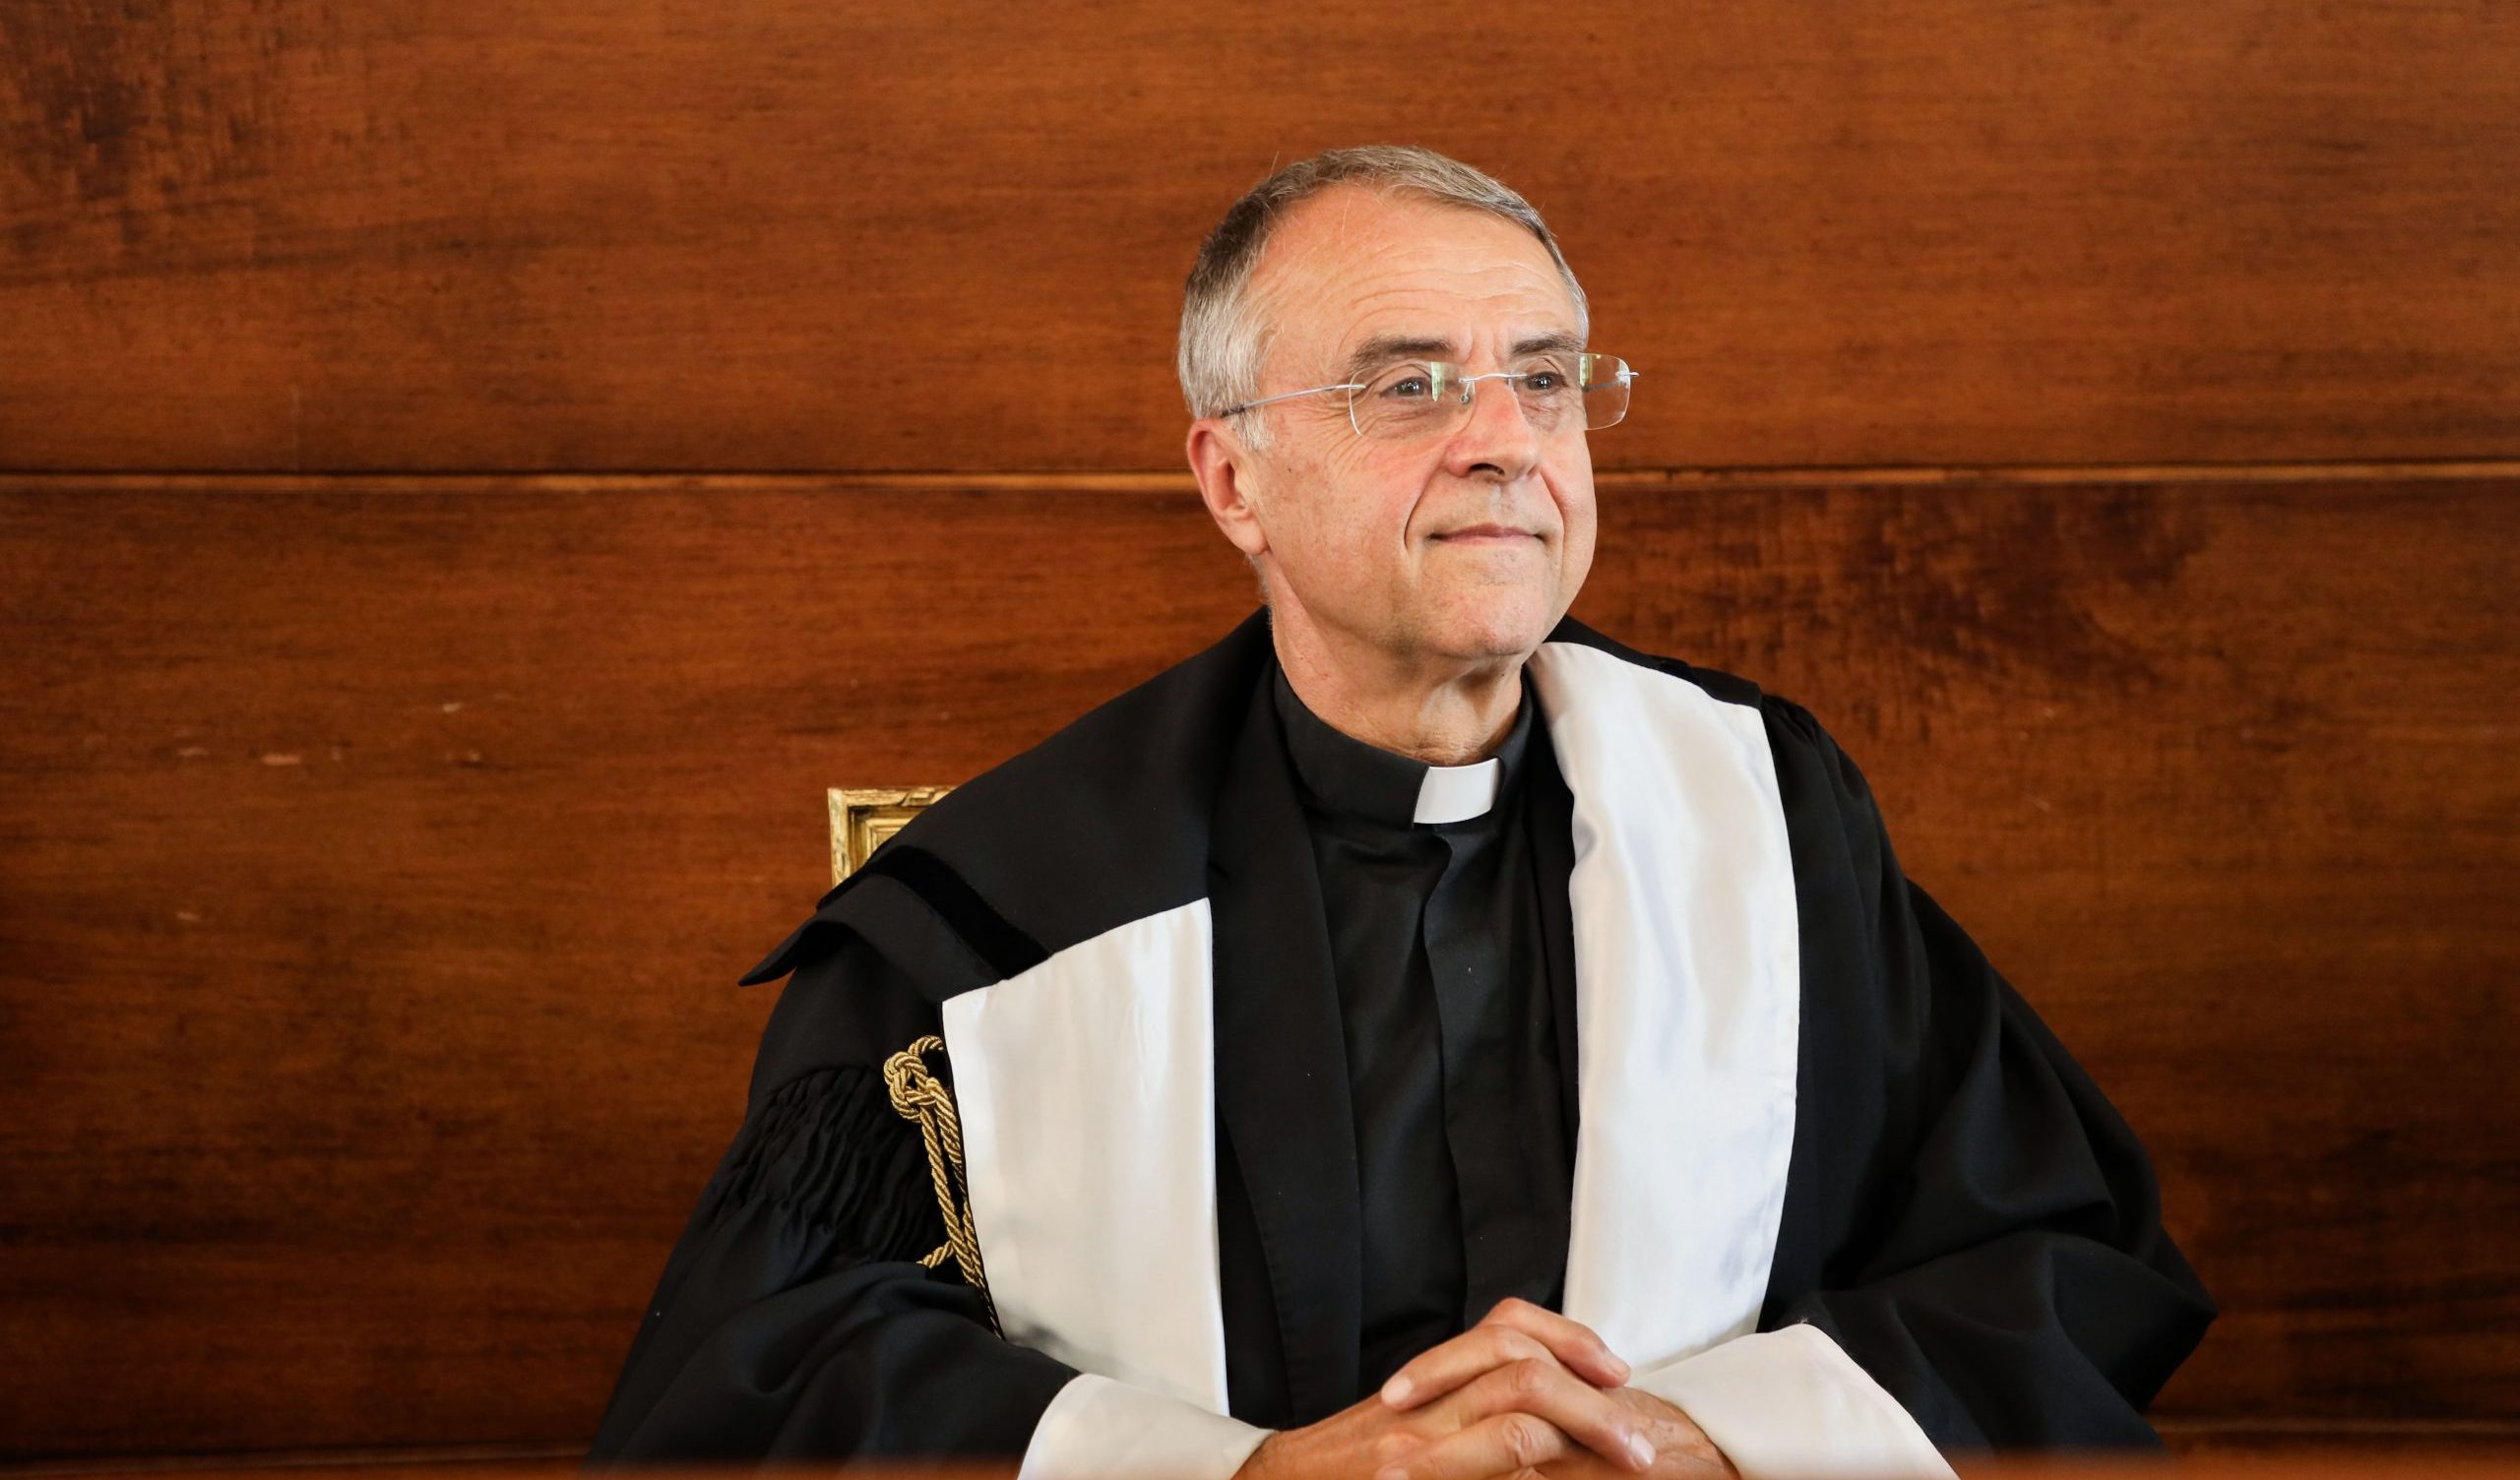 Coppie gay, il Pontificio istituto teologico: "Nessuno può essere privato della benedizione di Dio"